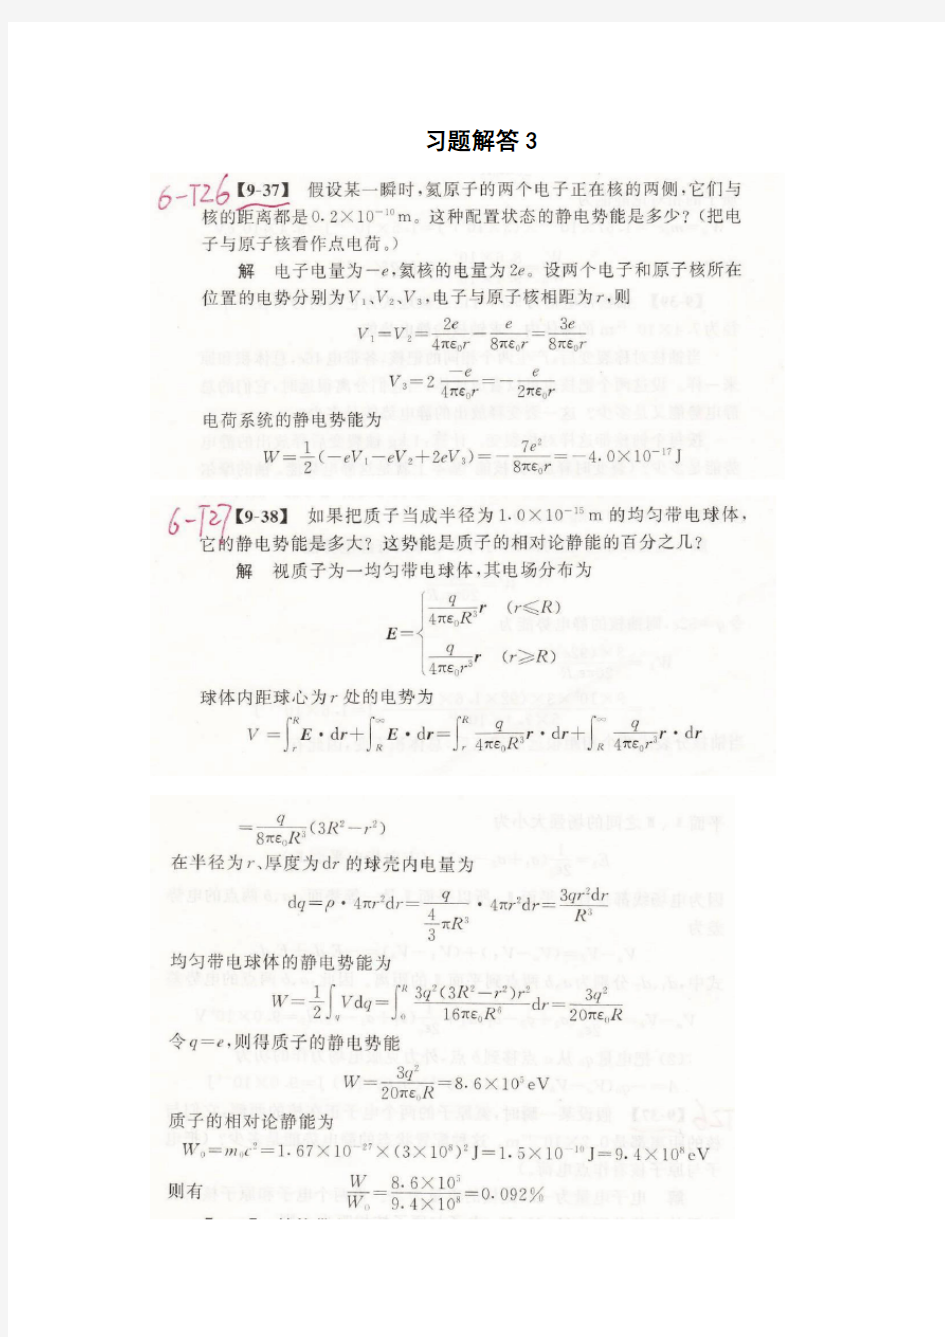 华中科技大学 大学物理习题解答stud2